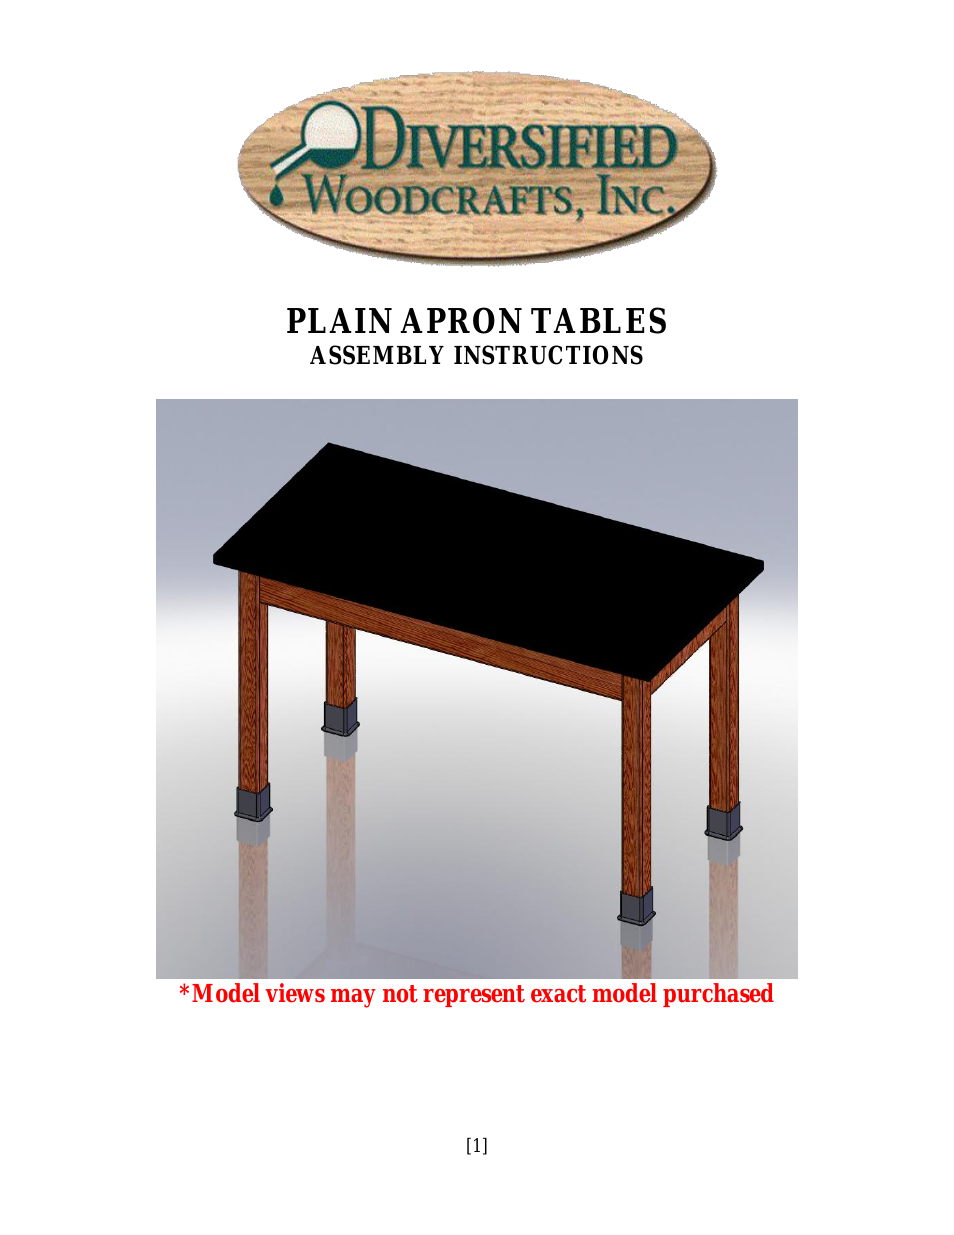 PLAIN APRON TABLES